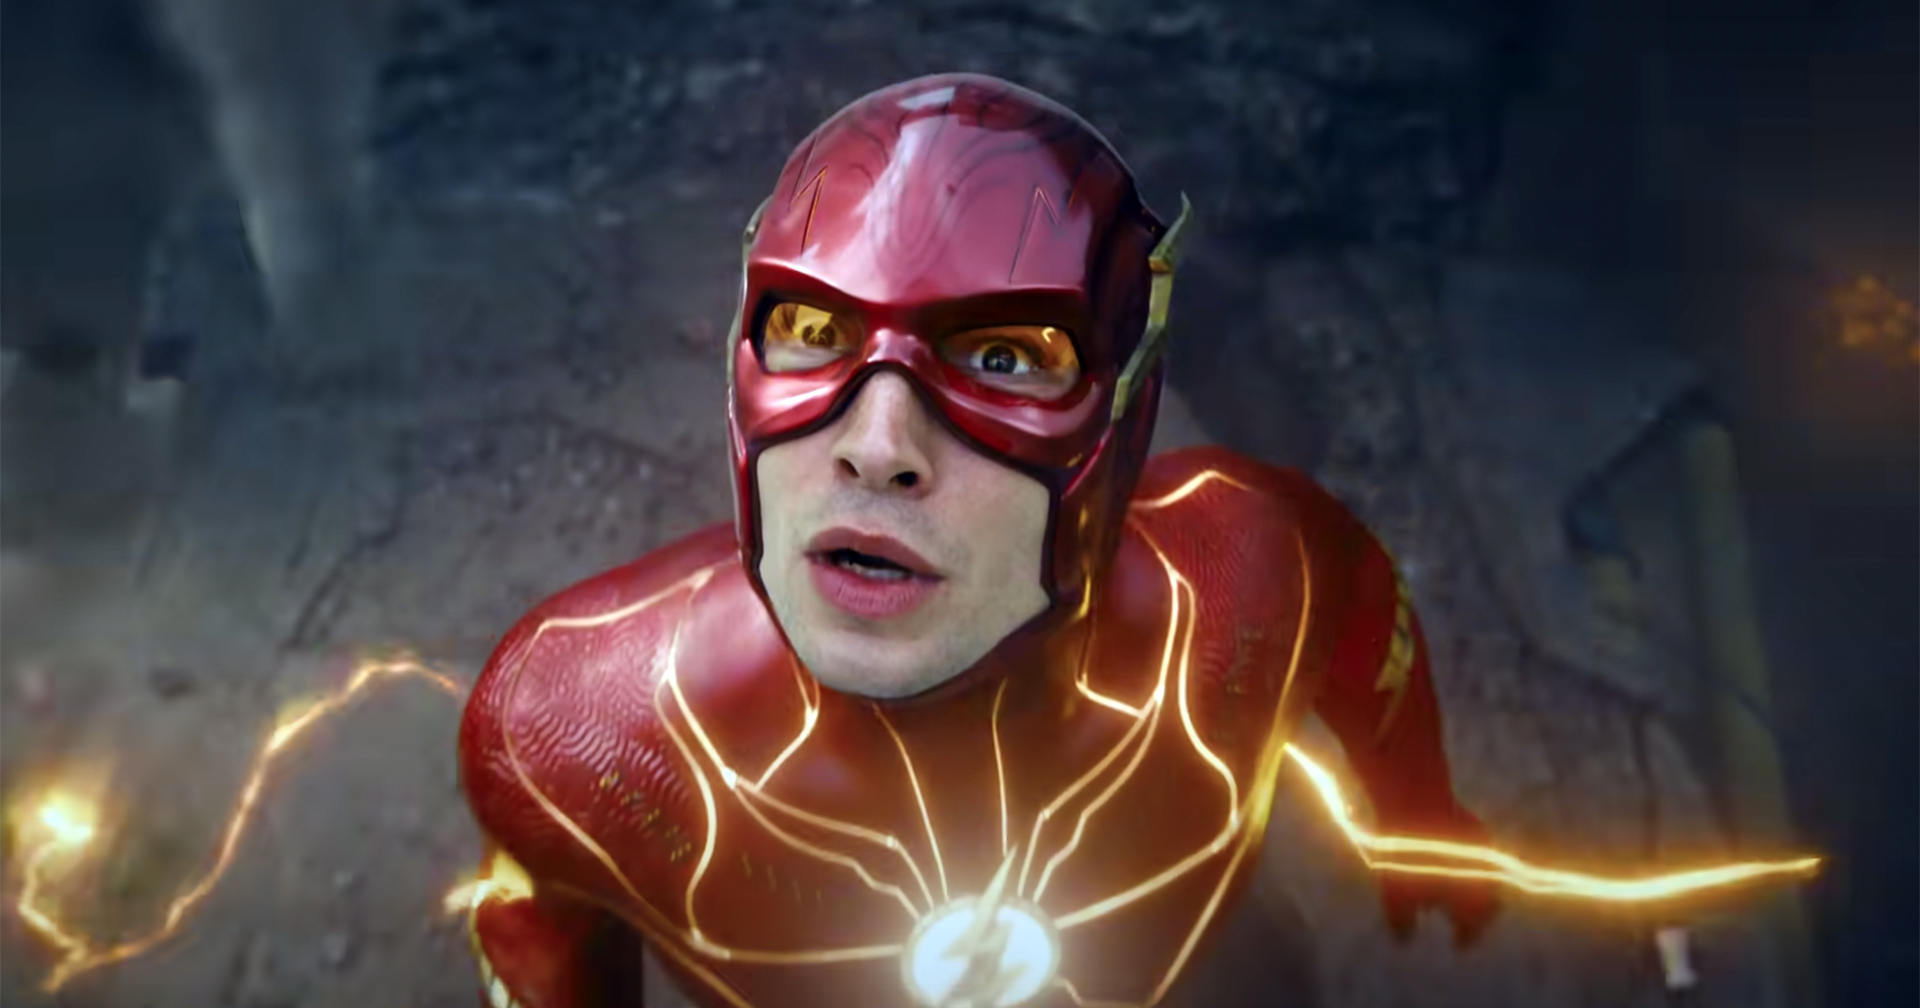 ‘The Flash’ ทำเงินสัปดาห์ที่ 2 เพียง 15 ล้านเหรียญ : ร่วงหนักสุดเป็นประวัติการณ์ของ DCEU